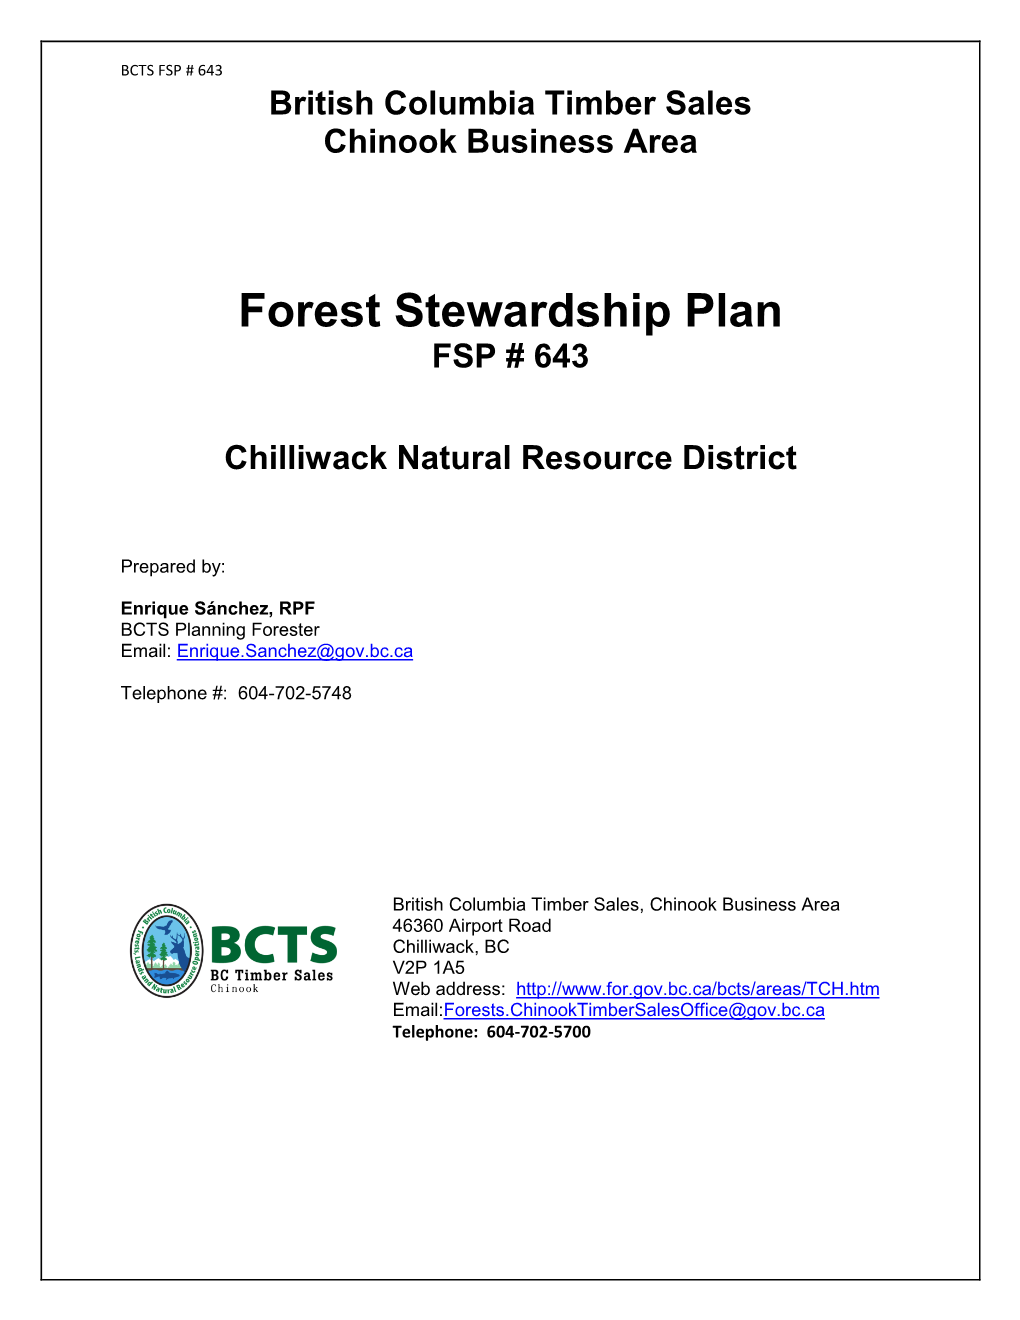 Forest Stewardship Plan FSP # 643